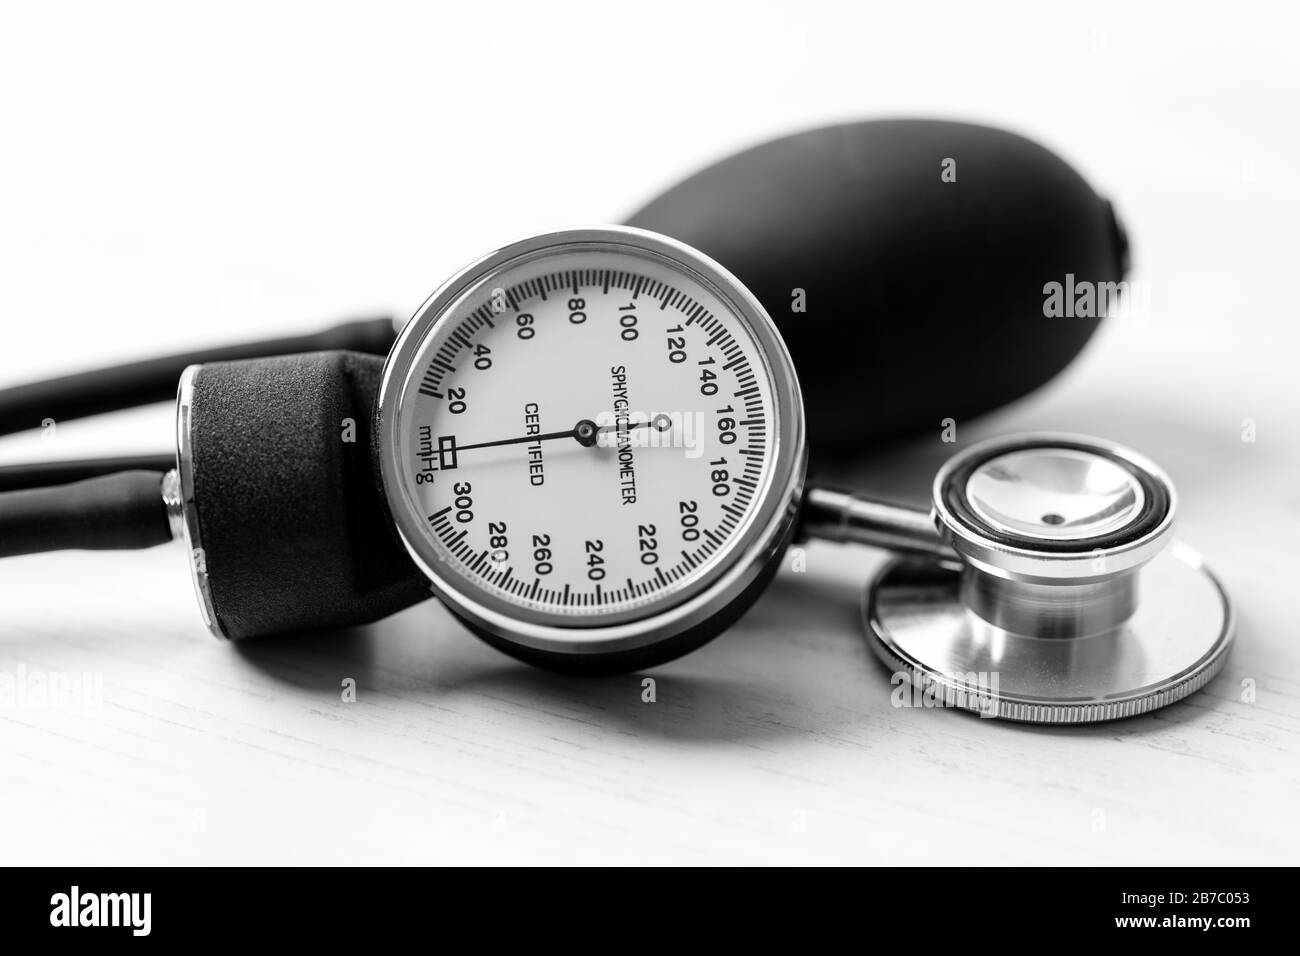 Pressione sanguigna - uno sfigmomanometro (uno strumento per la misurazione della pressione sanguigna) su un desktop di legno bianco. Foto Stock